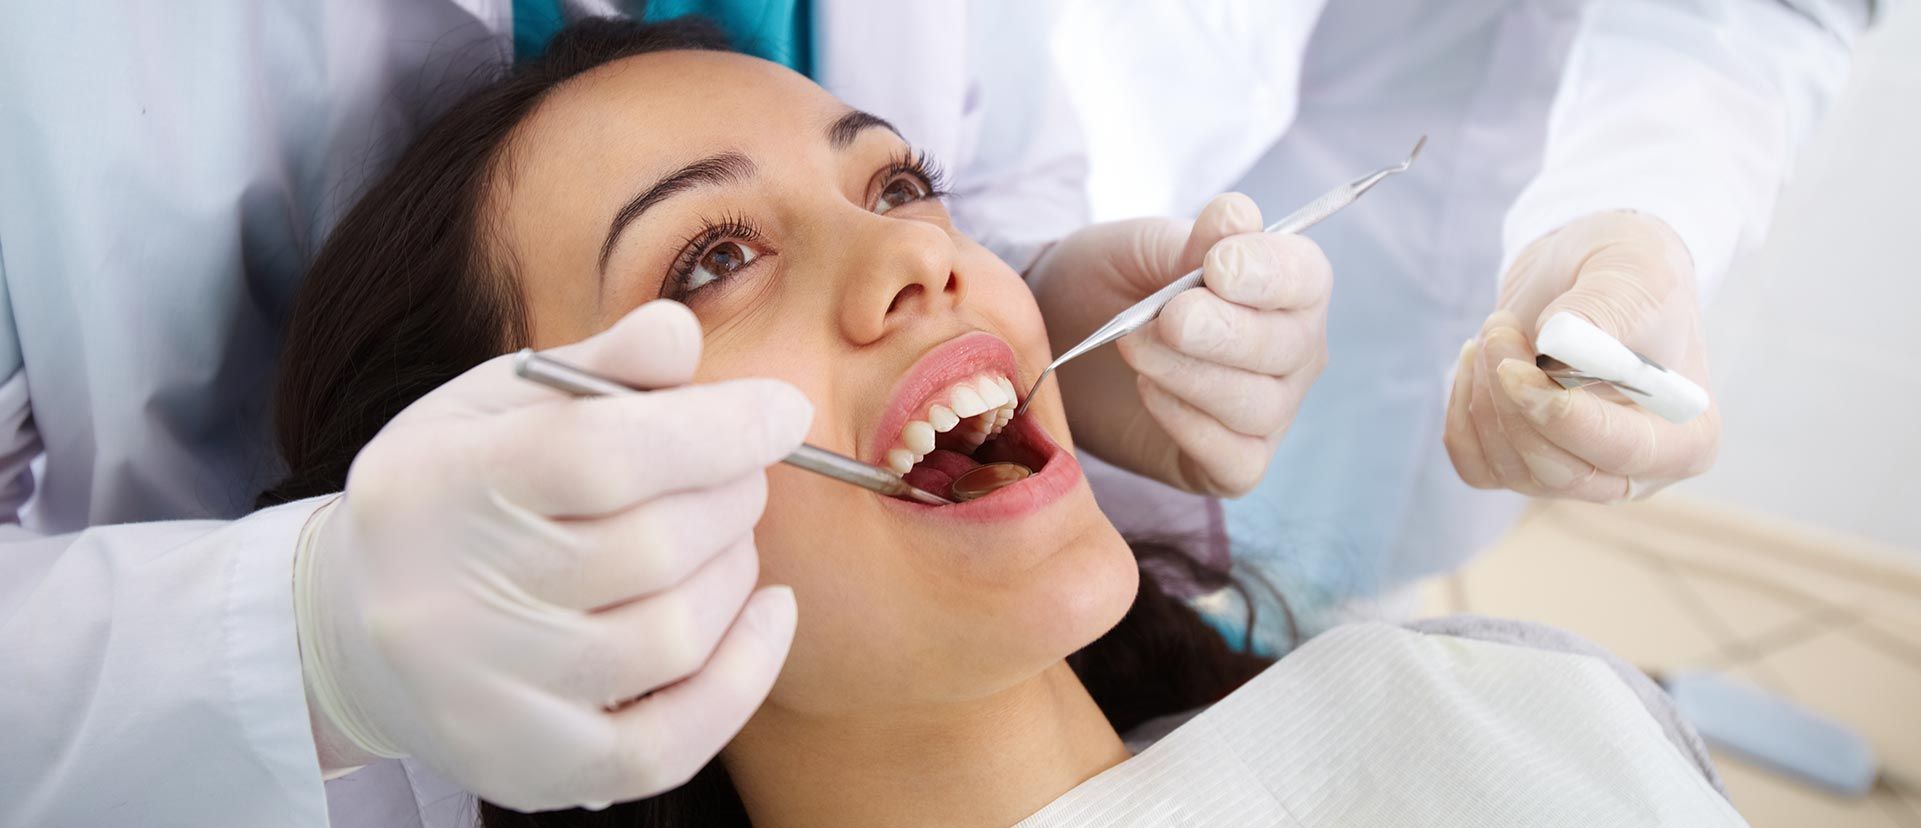 بیلدآپ (بازسازی) دندان با کامپوزیت ژاپنی دکتر آزاده سیدمیرزائی در کرج 1